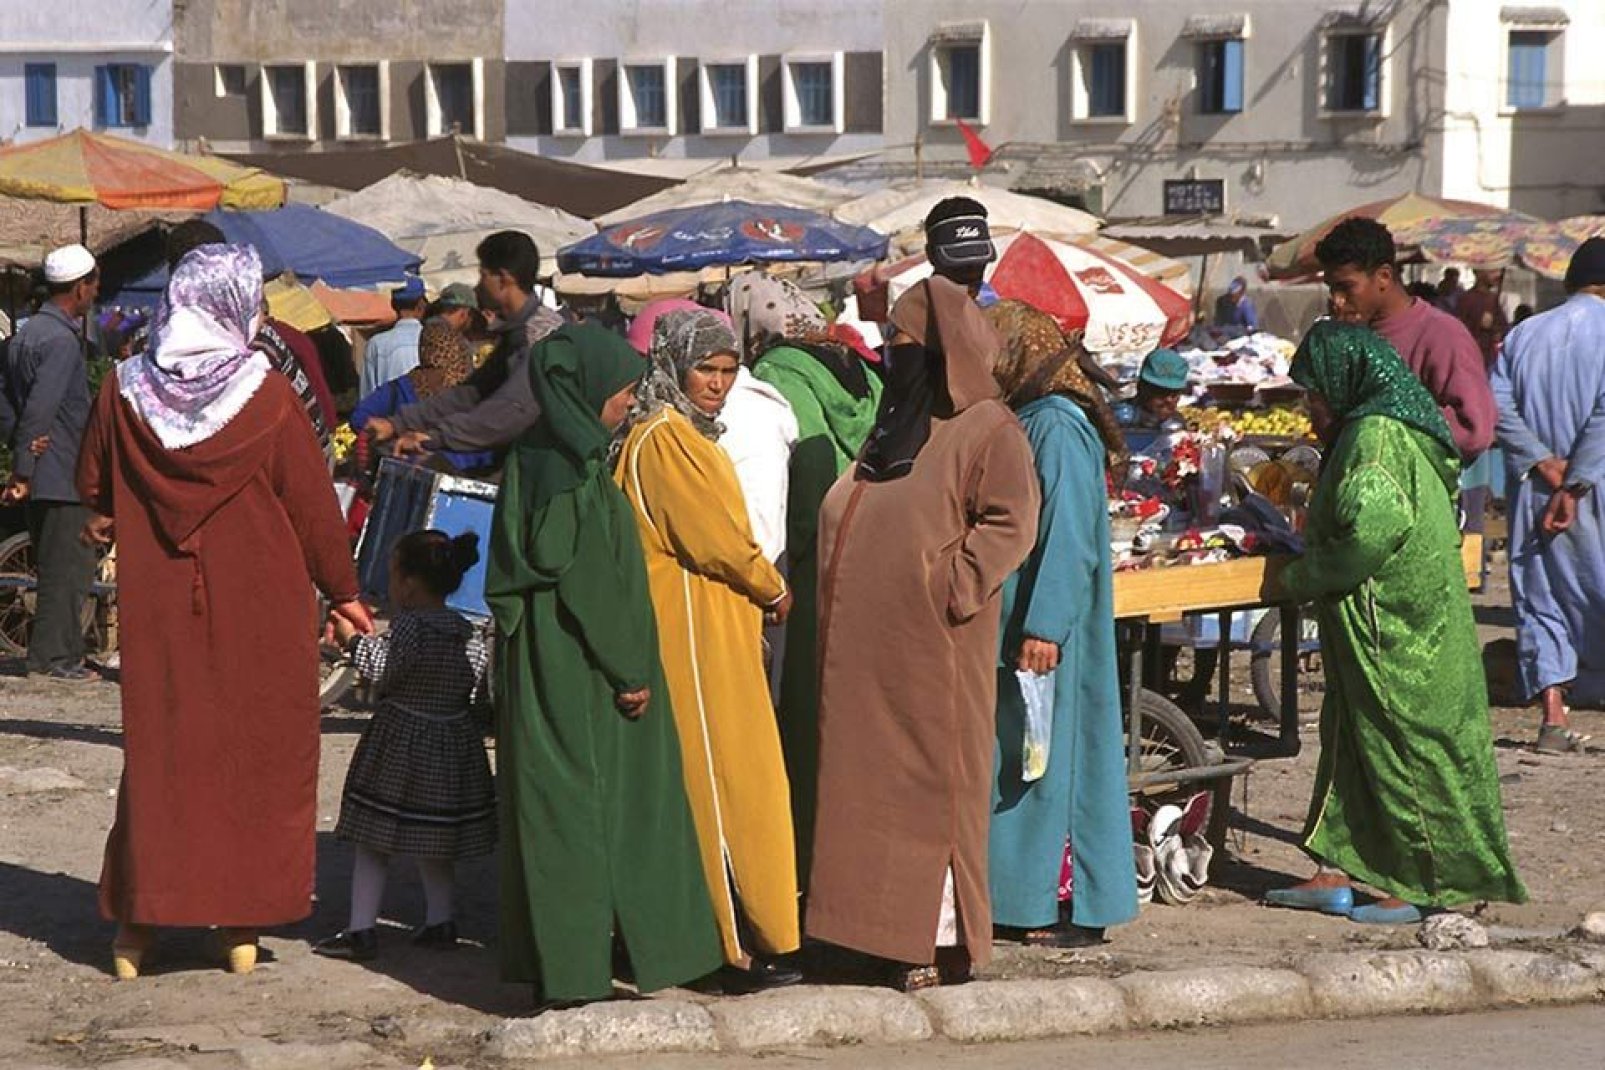 les femmes aiment se retrouver au marché pour bavarder et acheter épices, fruits légumes ou poissons